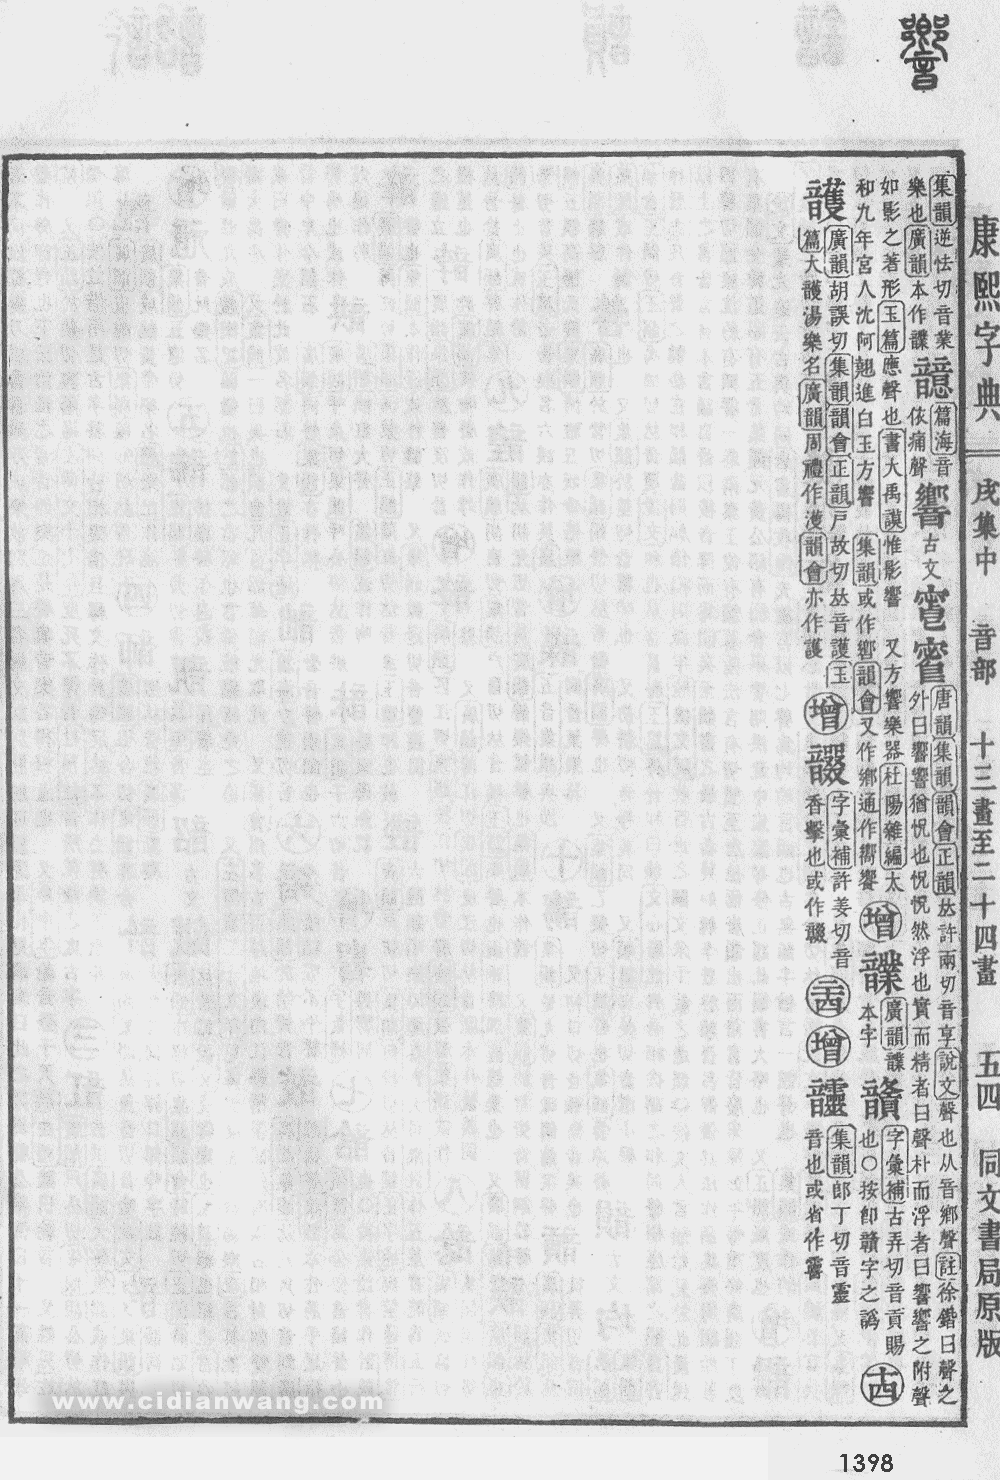 康熙字典掃描版第1398頁